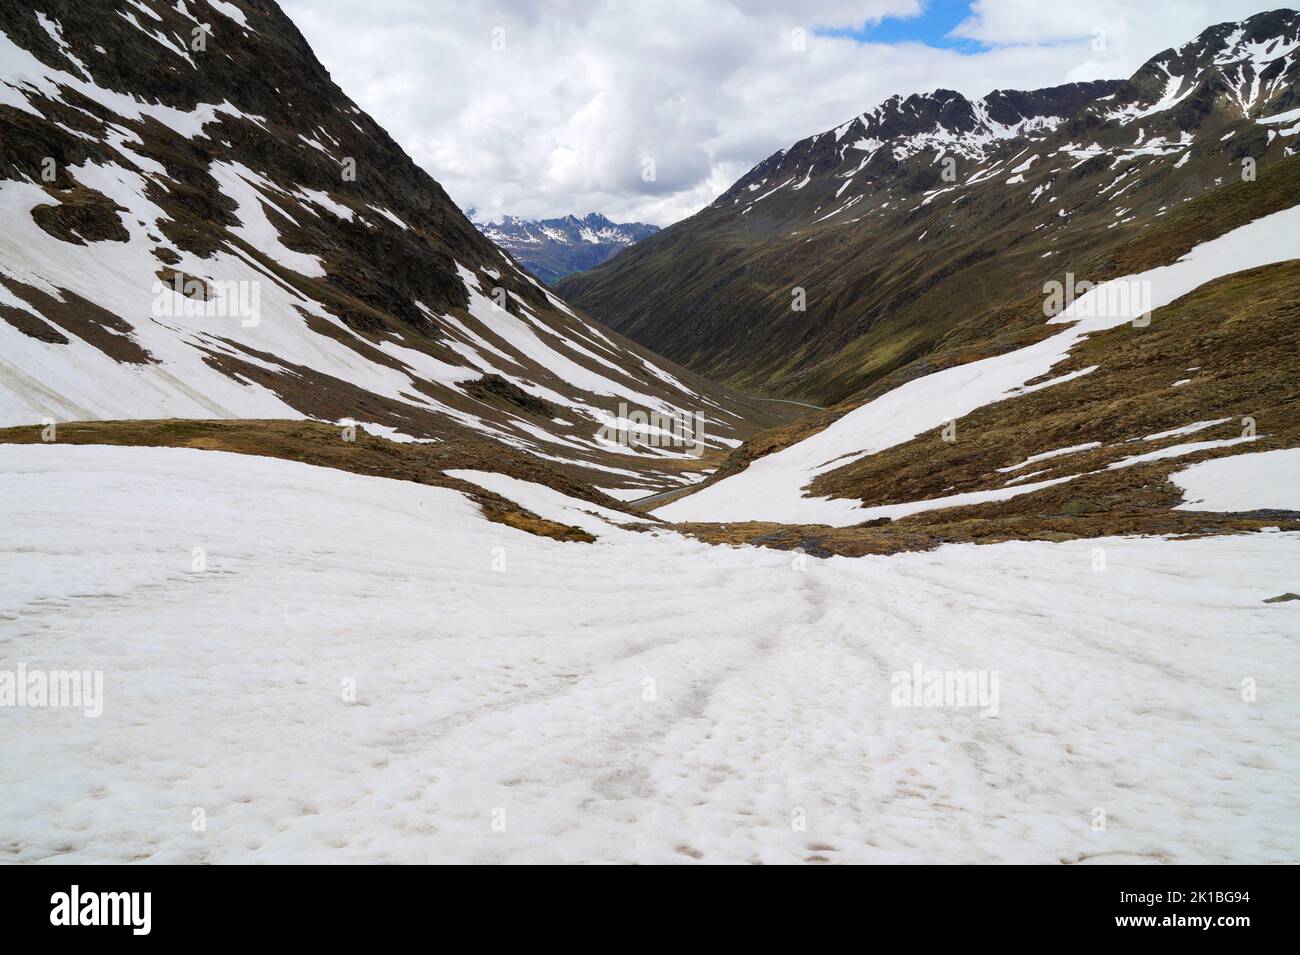 Landschaftlich reizvoller verschneiter Timmelsjoch-Pass, der das Ötztal im österreichischen Bundesland Tirol mit dem Passeiertal in der italienischen Provinz Südtirol verbindet Stockfoto